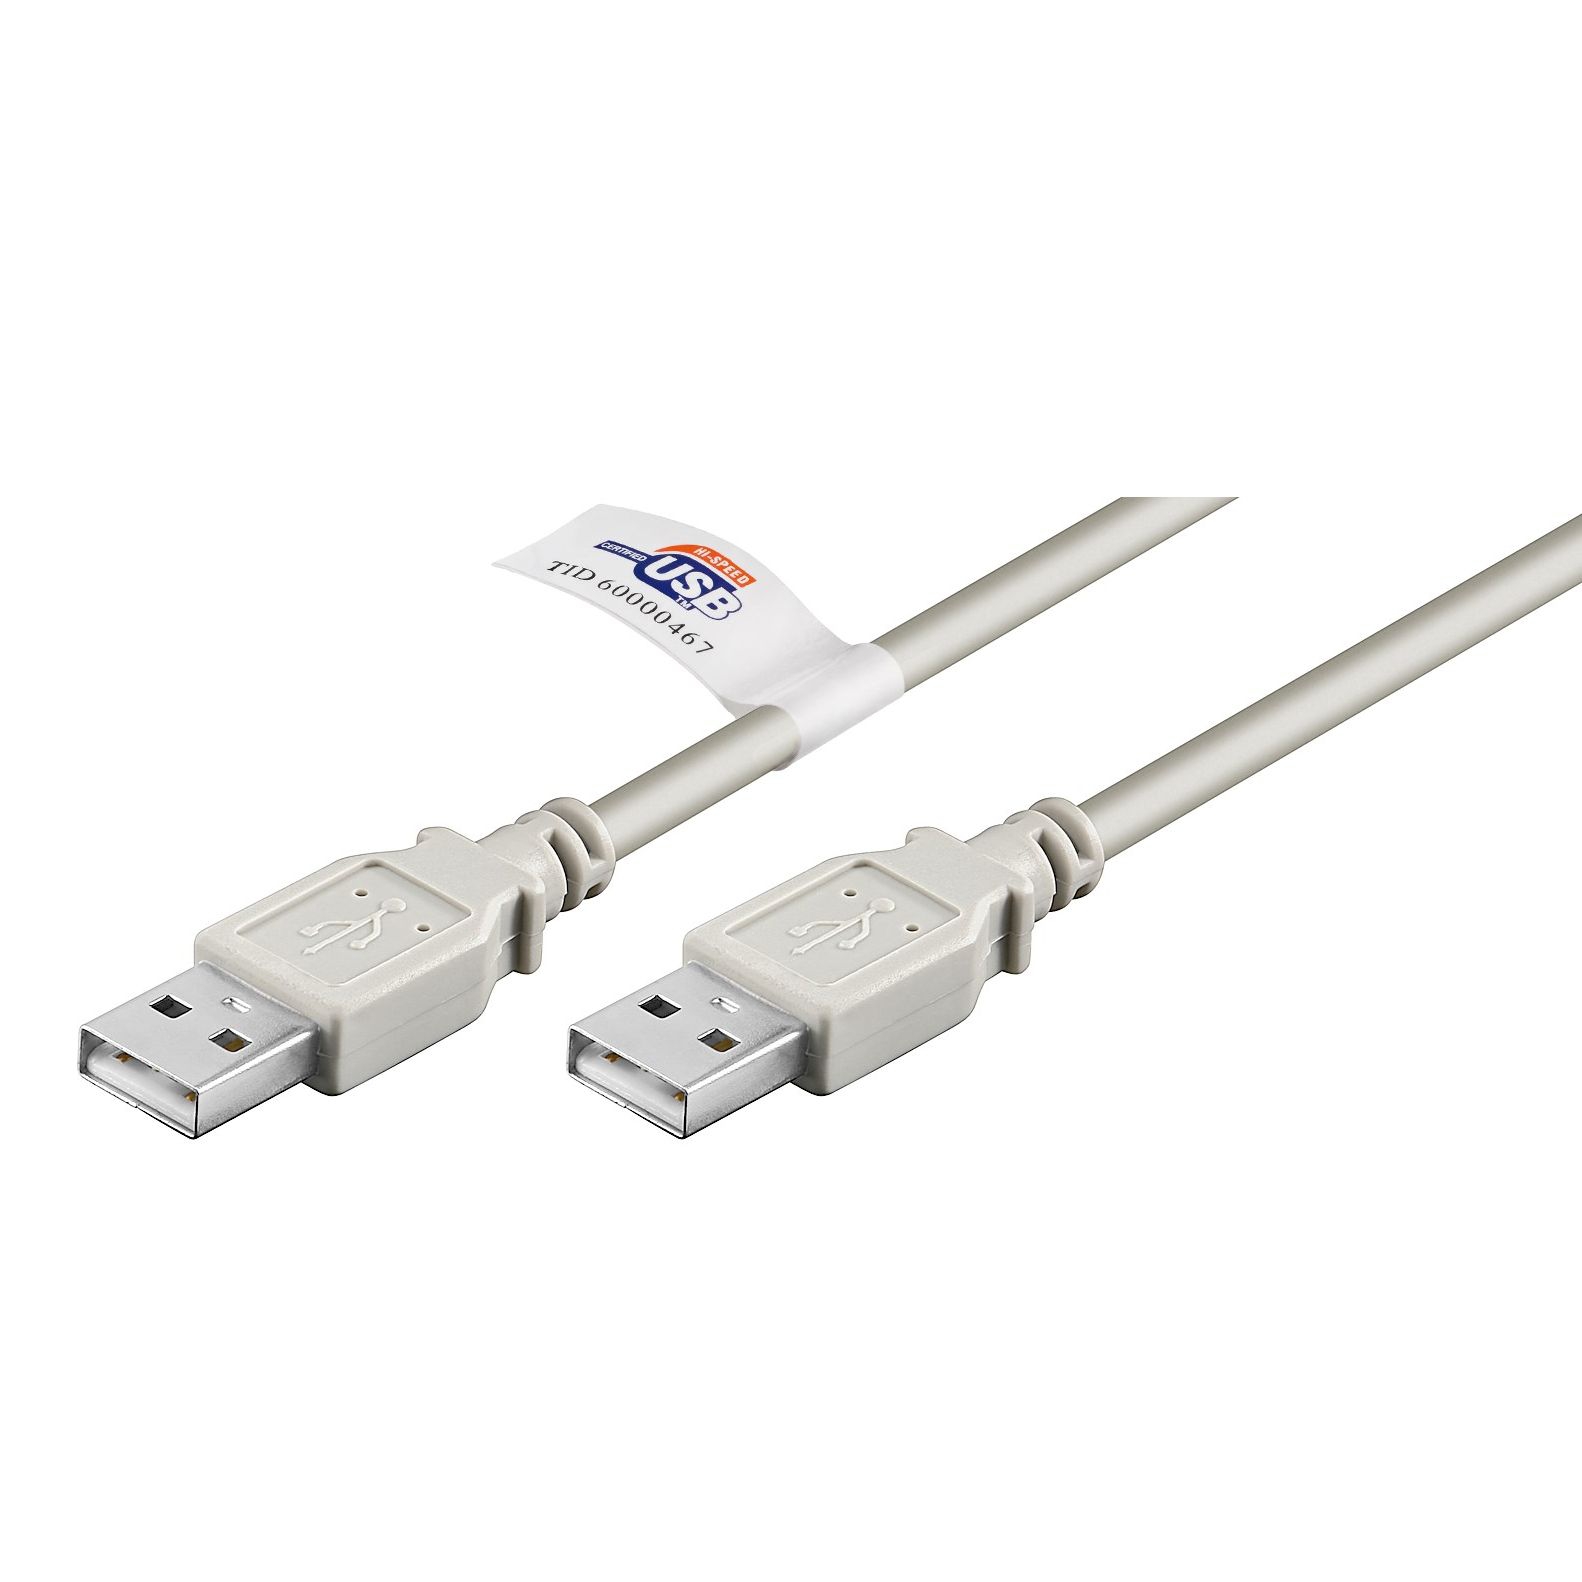 Câble USB 2.0 spécial avec 2x fiche USB A, avec certification, 5m